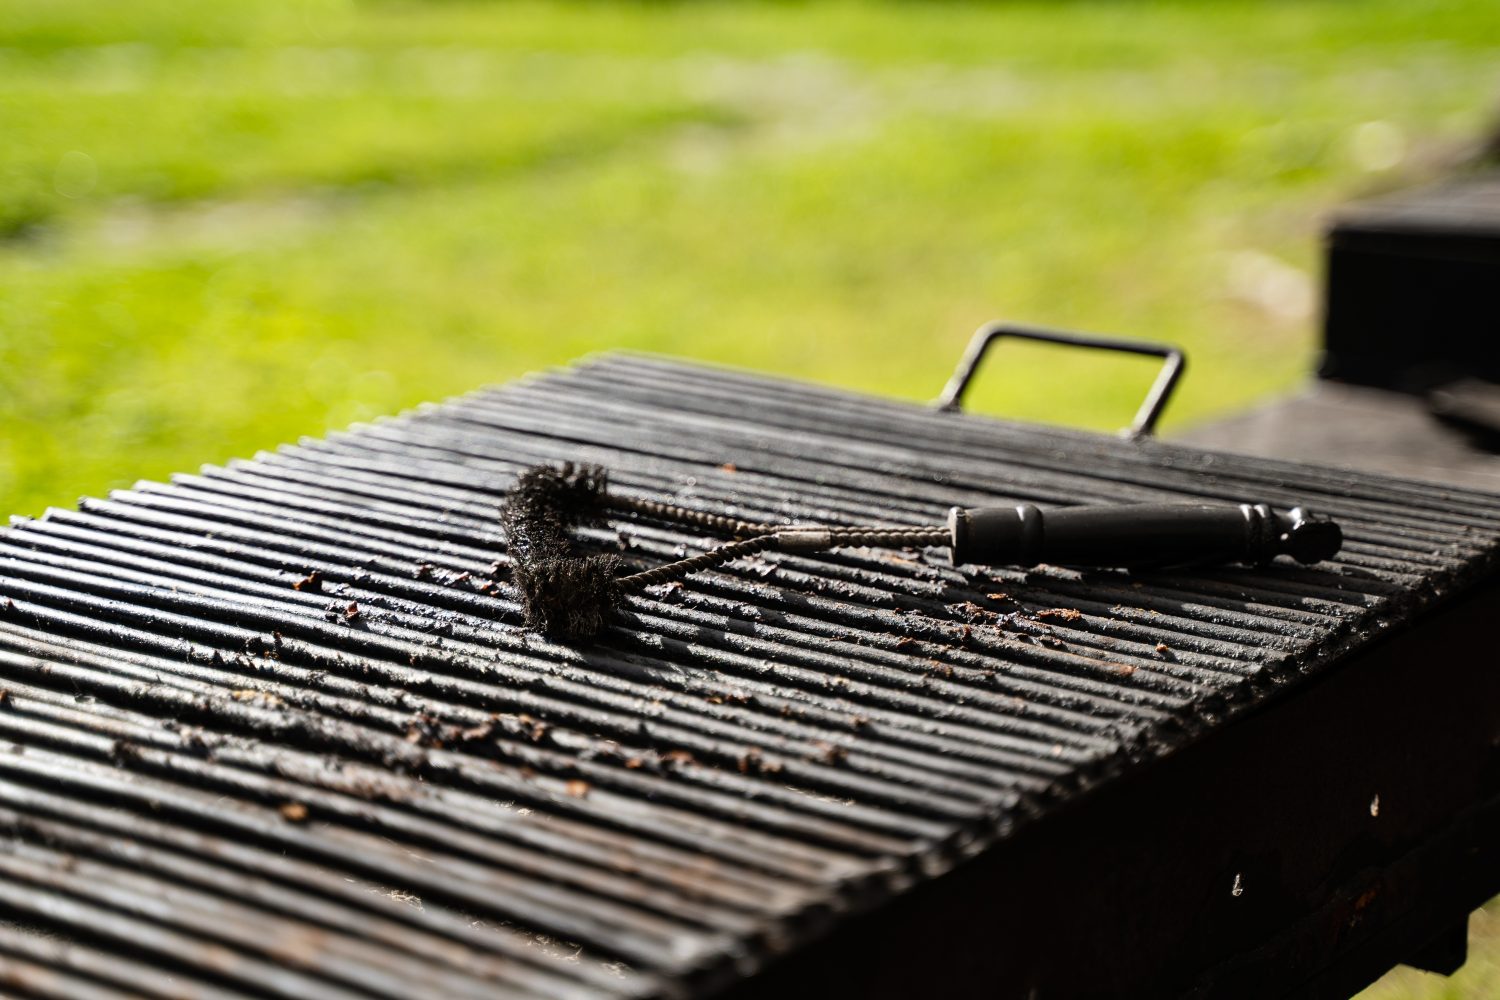 vista frontale primo piano della griglia per barbecue vuota all'aperto con spazzola nera per pulire la parte superiore in ambiente esterno con erba verde